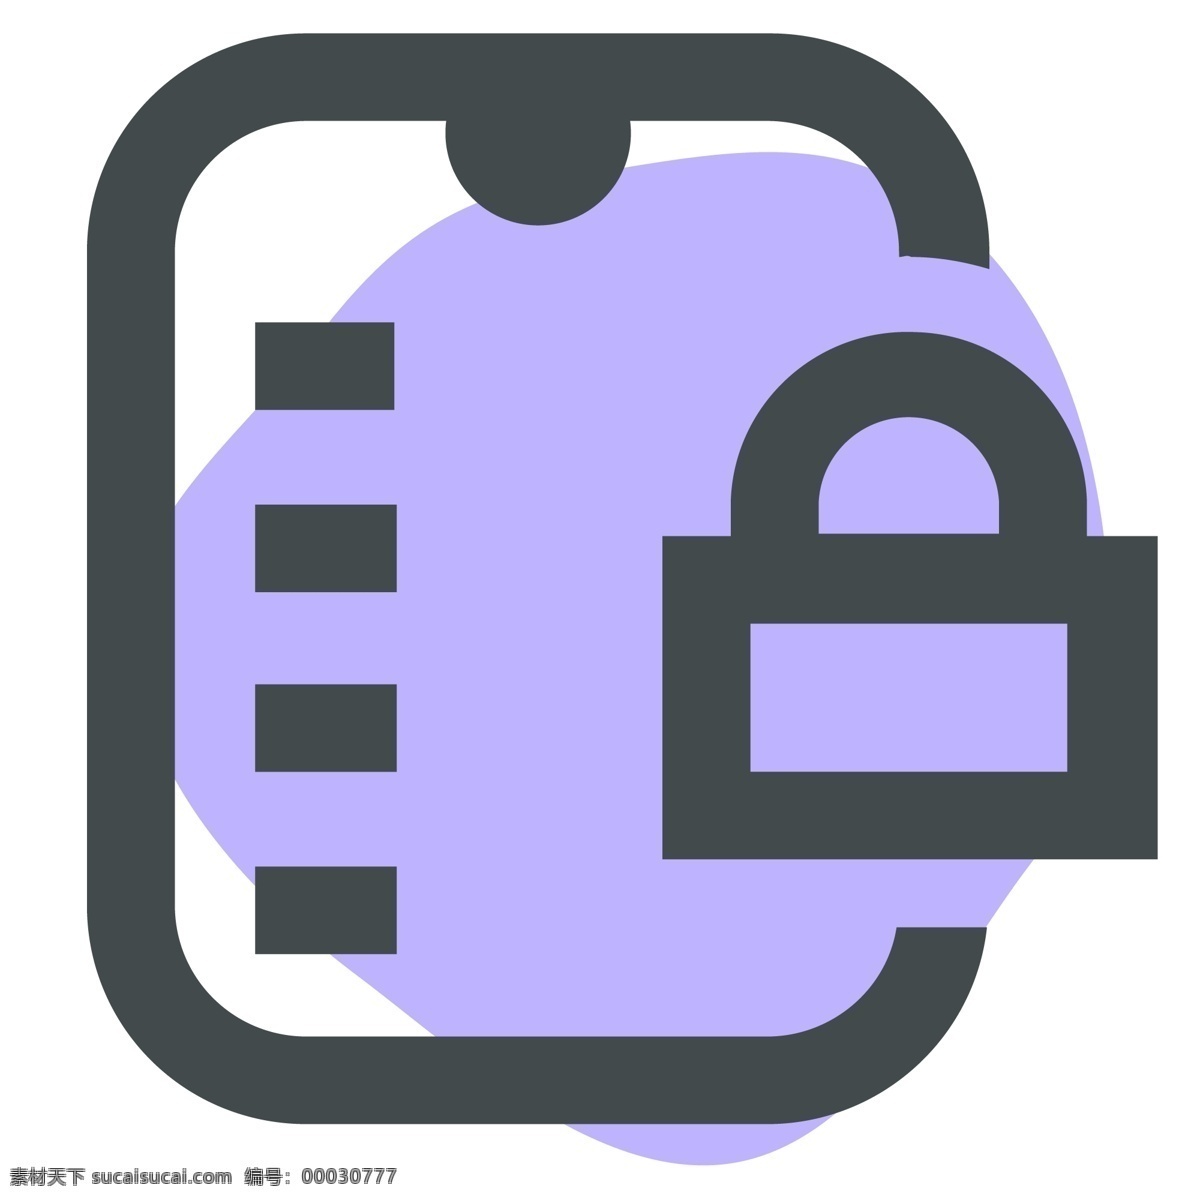 安全 文件 纸张 铁锁 安全文件 手机图标 智能图标 教育图标 办公图标 网页图标 彩色图标